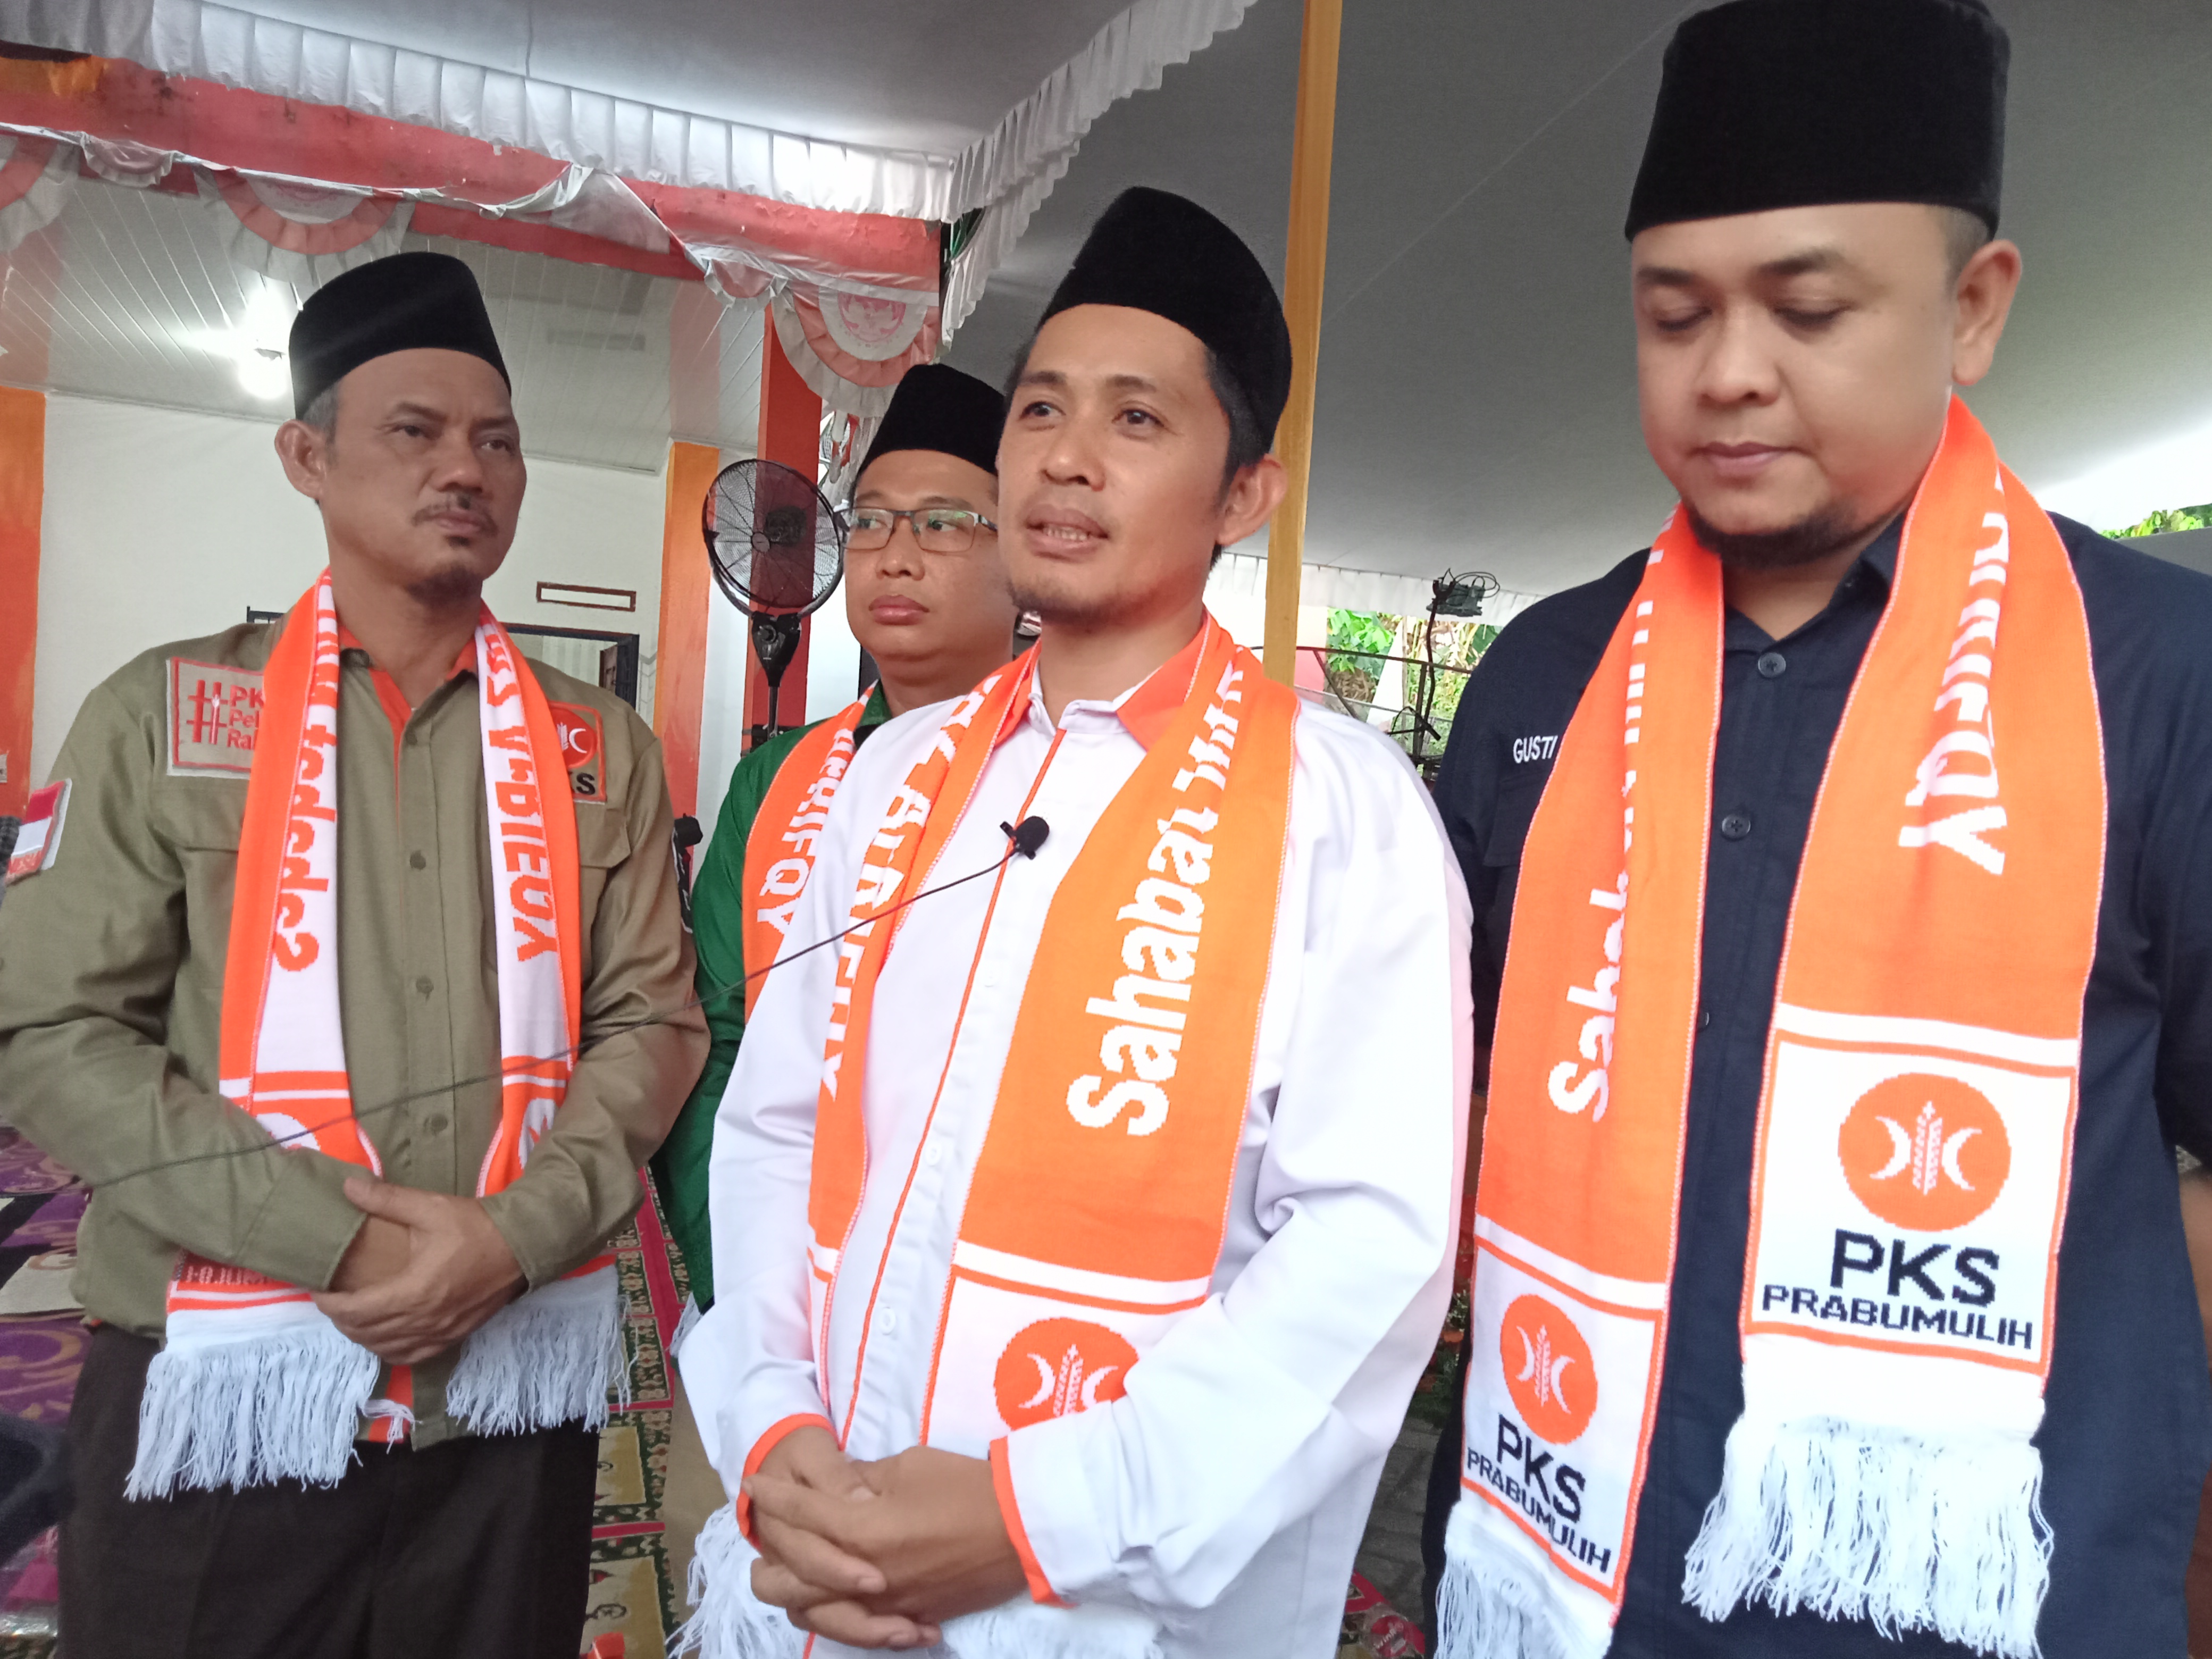 Peringati Maulid Nabi, PKS Prabumulih Undang Partai Koalisi, Targetkan Kemenangan AMIN hingga 80 Persen